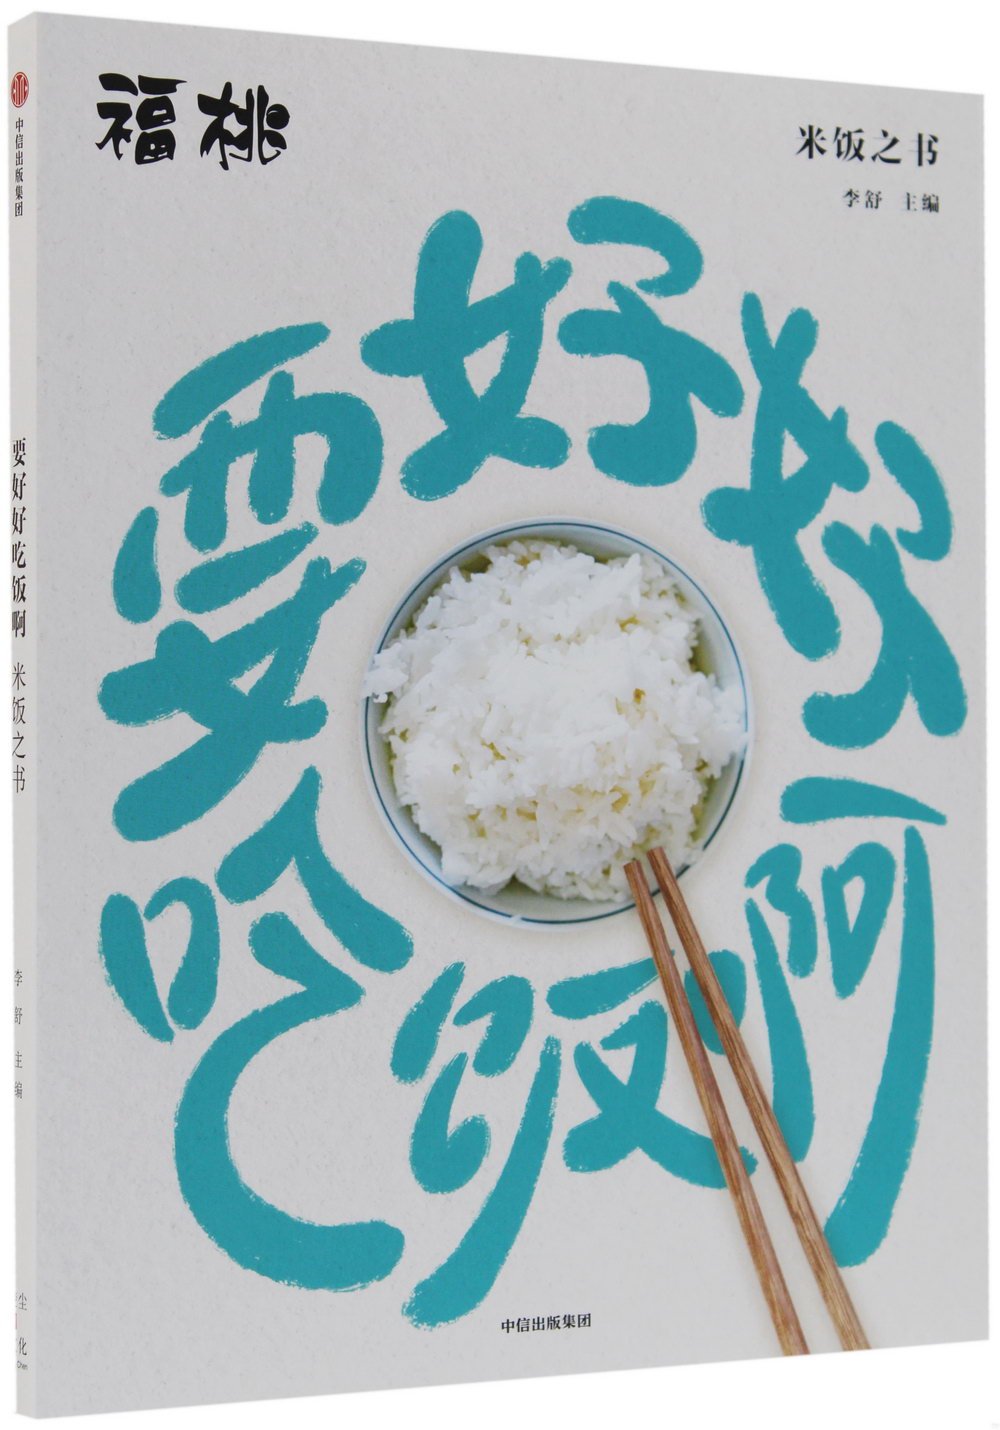 要好好吃飯啊:米飯之書